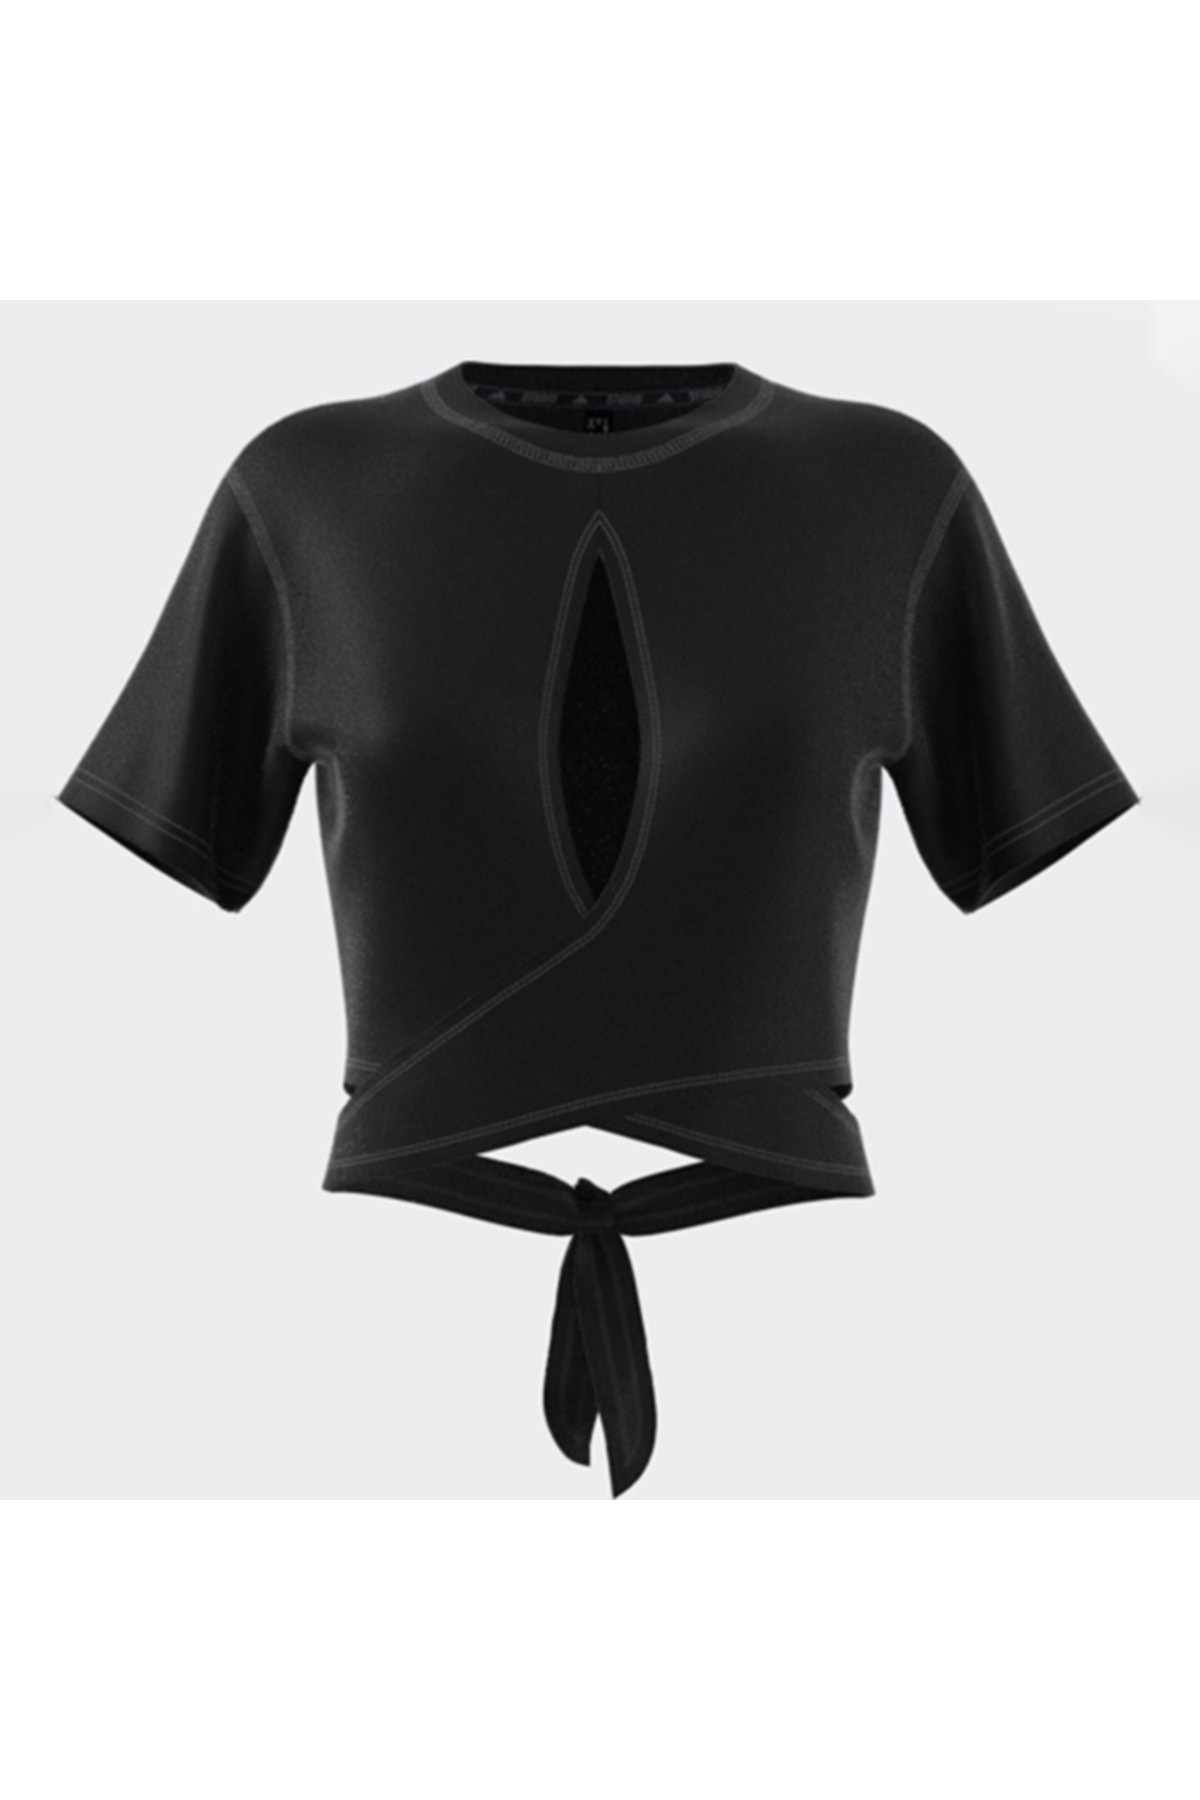 adidas Yoga Studio Kadın Siyah Tişört (hs8115)